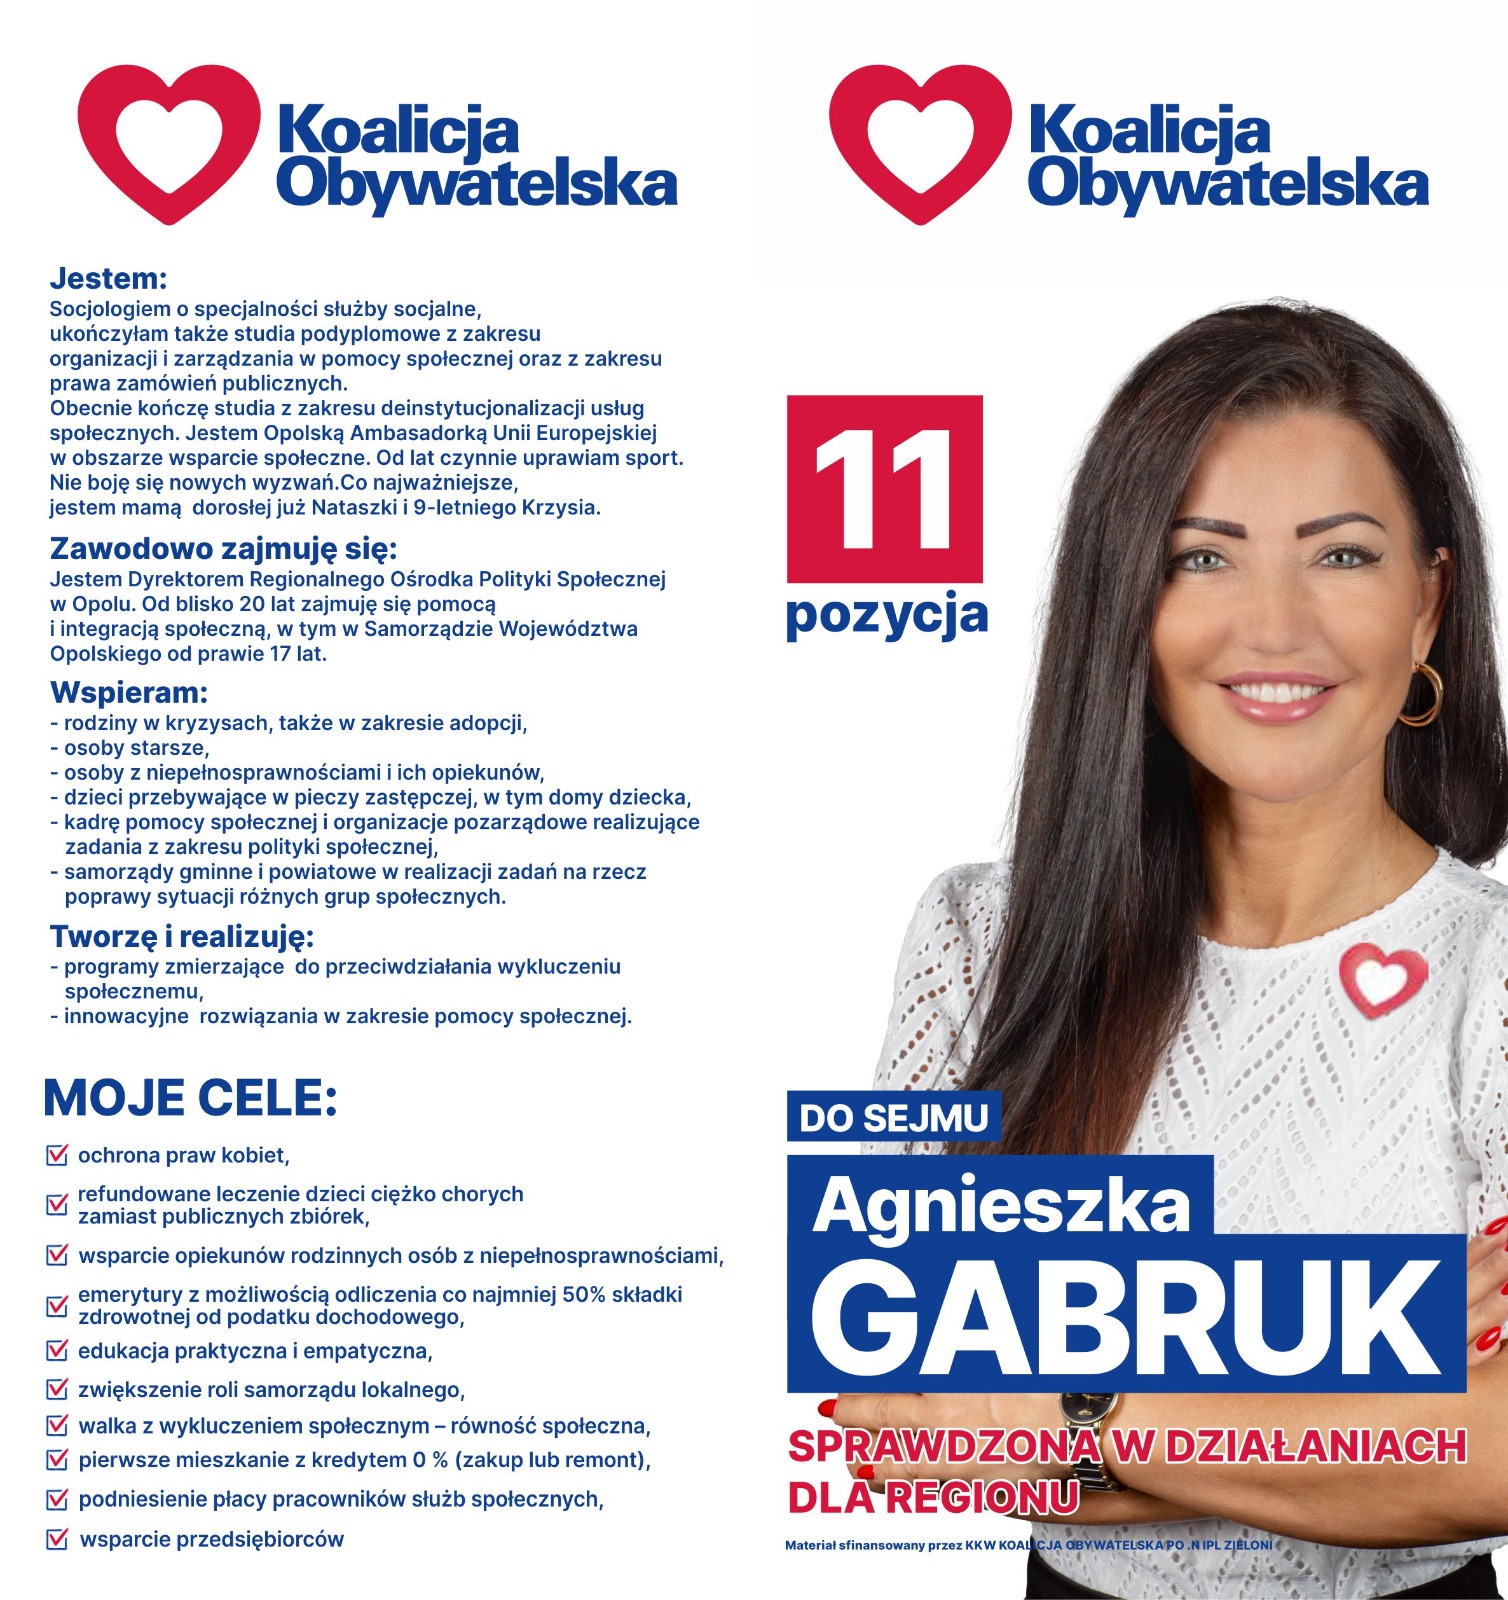 Agnieszka Gabruk &#8211; Sprawdzona w działaniach dla regionu!